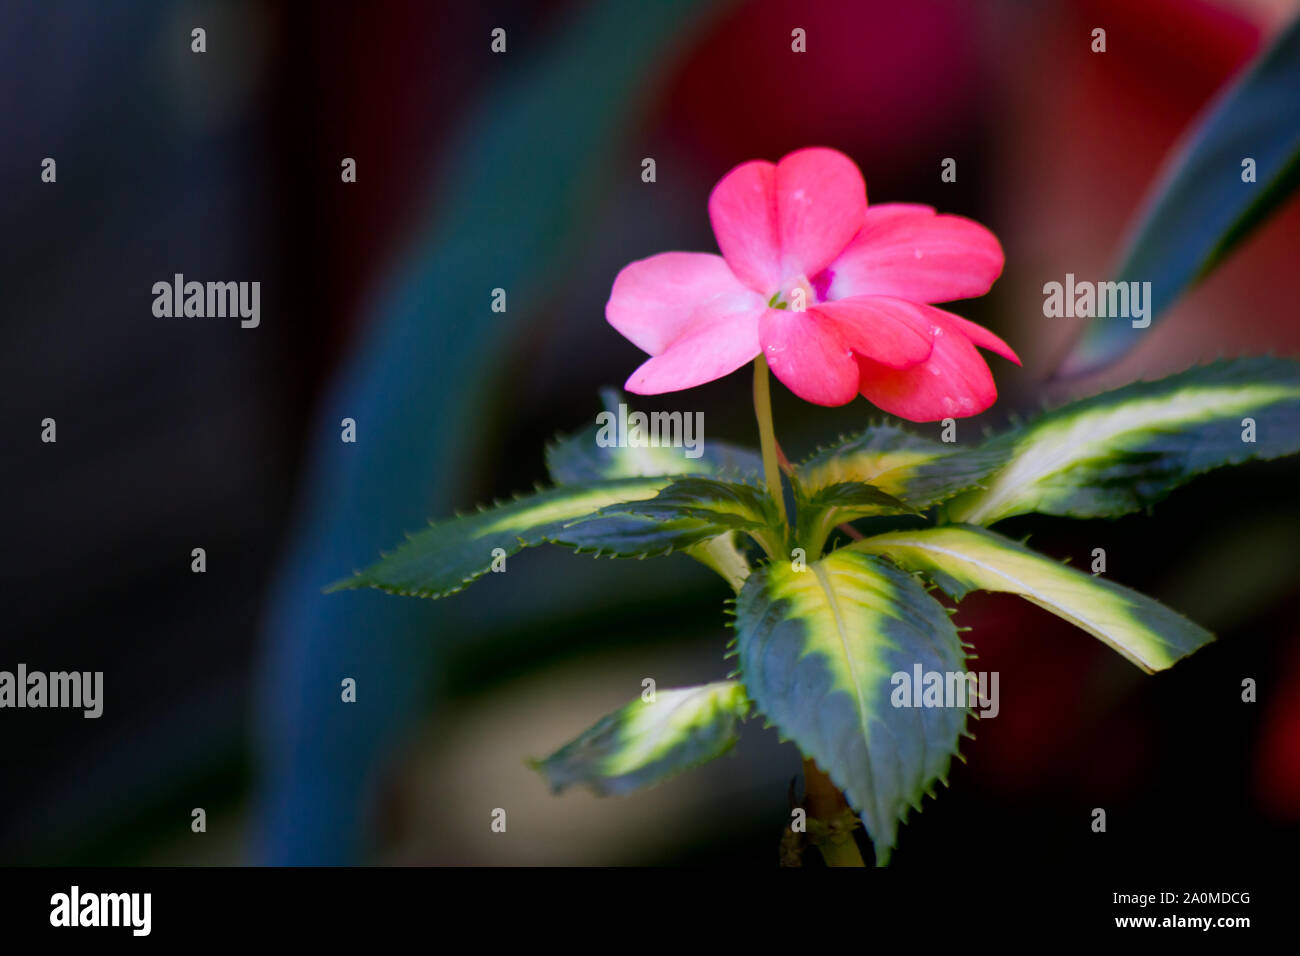 Pink impatiens fiore contro fuori fuoco sfondo. Sub-specie della famiglia Balsaminaceae. Questi fiori possono verificarsi in diversi colori. Foto Stock